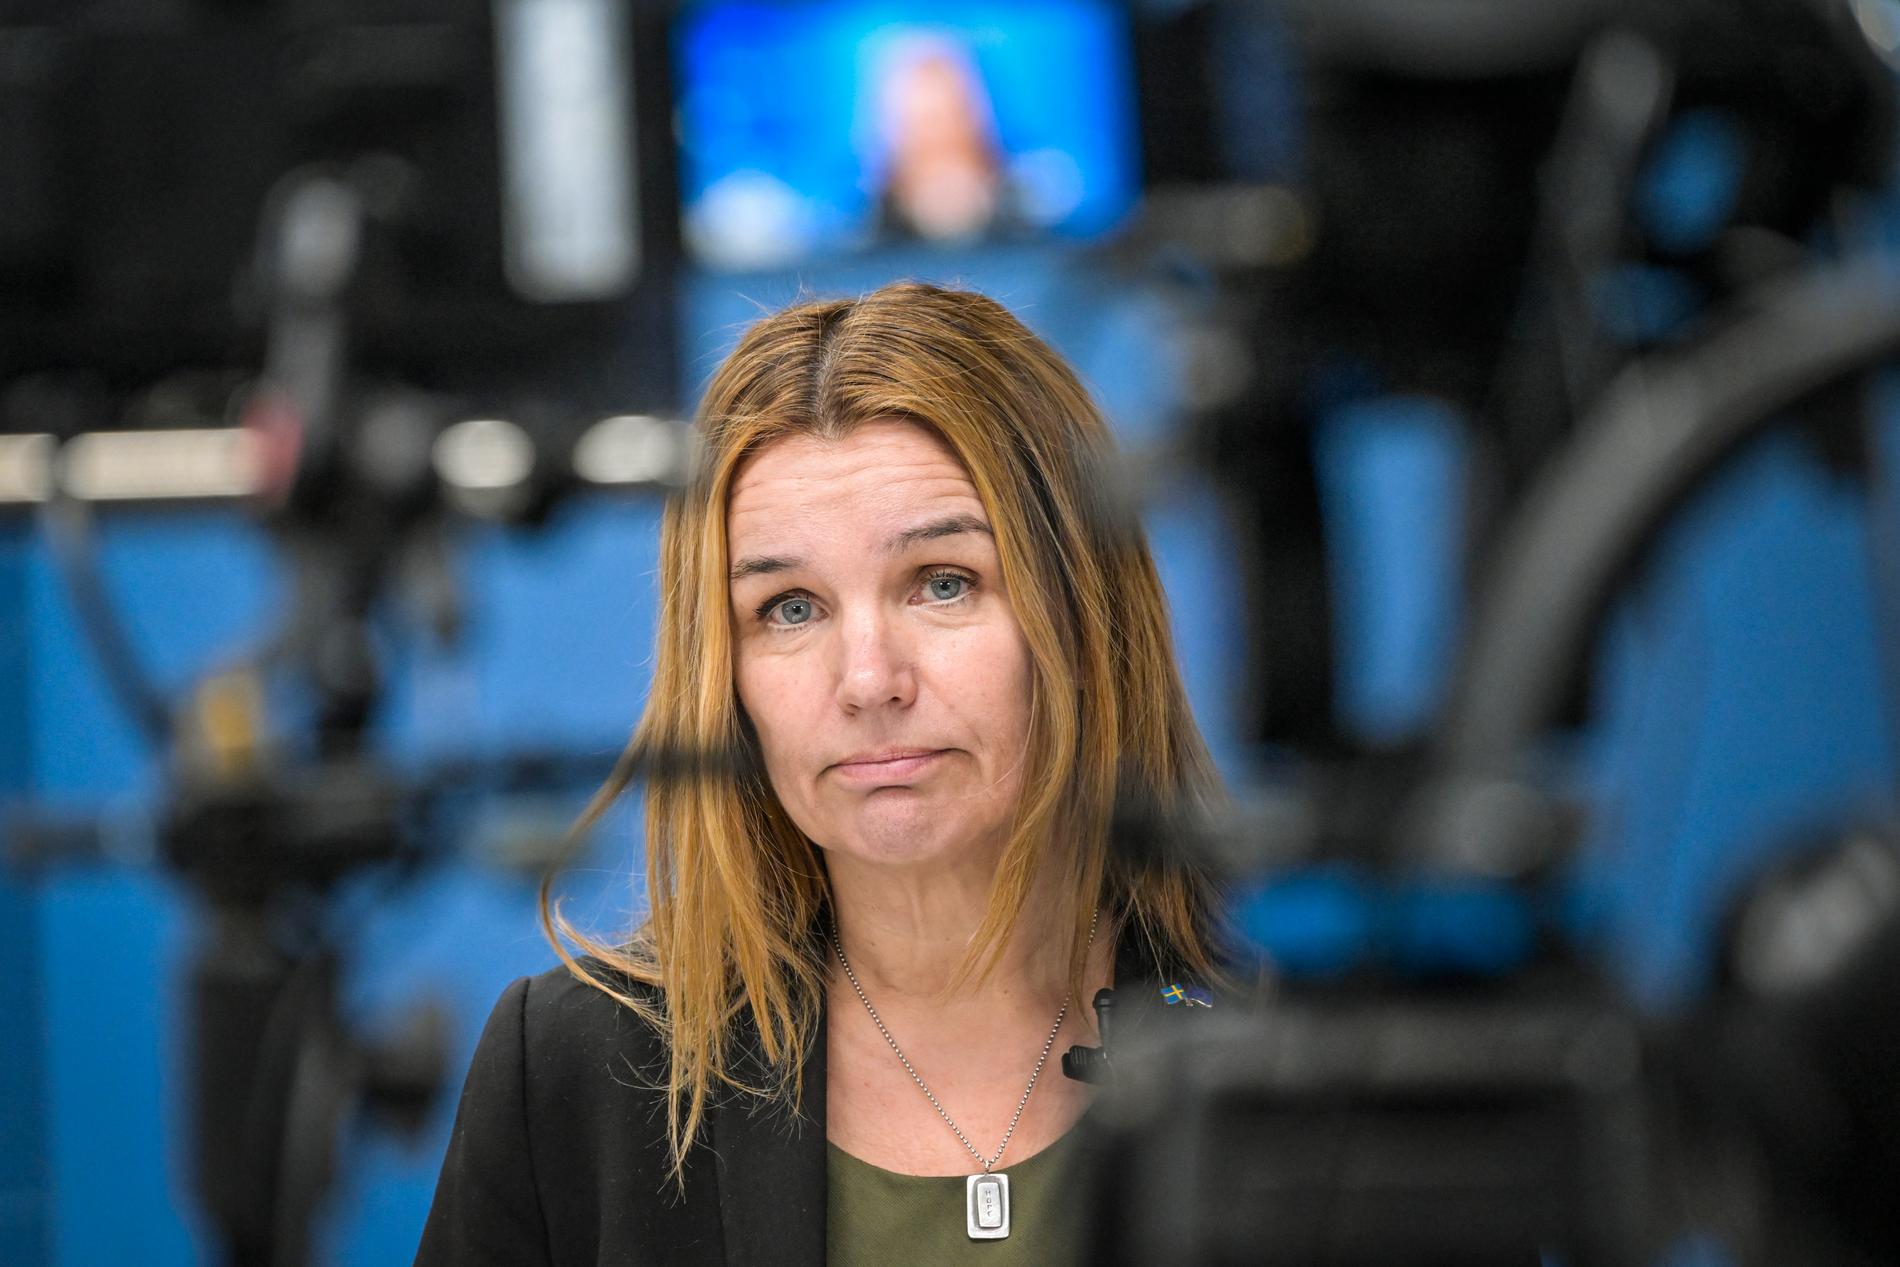 Landsbygdsminister Anna-Caren Sätherberg håller pressträff om livsmedelsförsörjningen med anledning av den allvarliga säkerhetspolitiska utvecklingen.